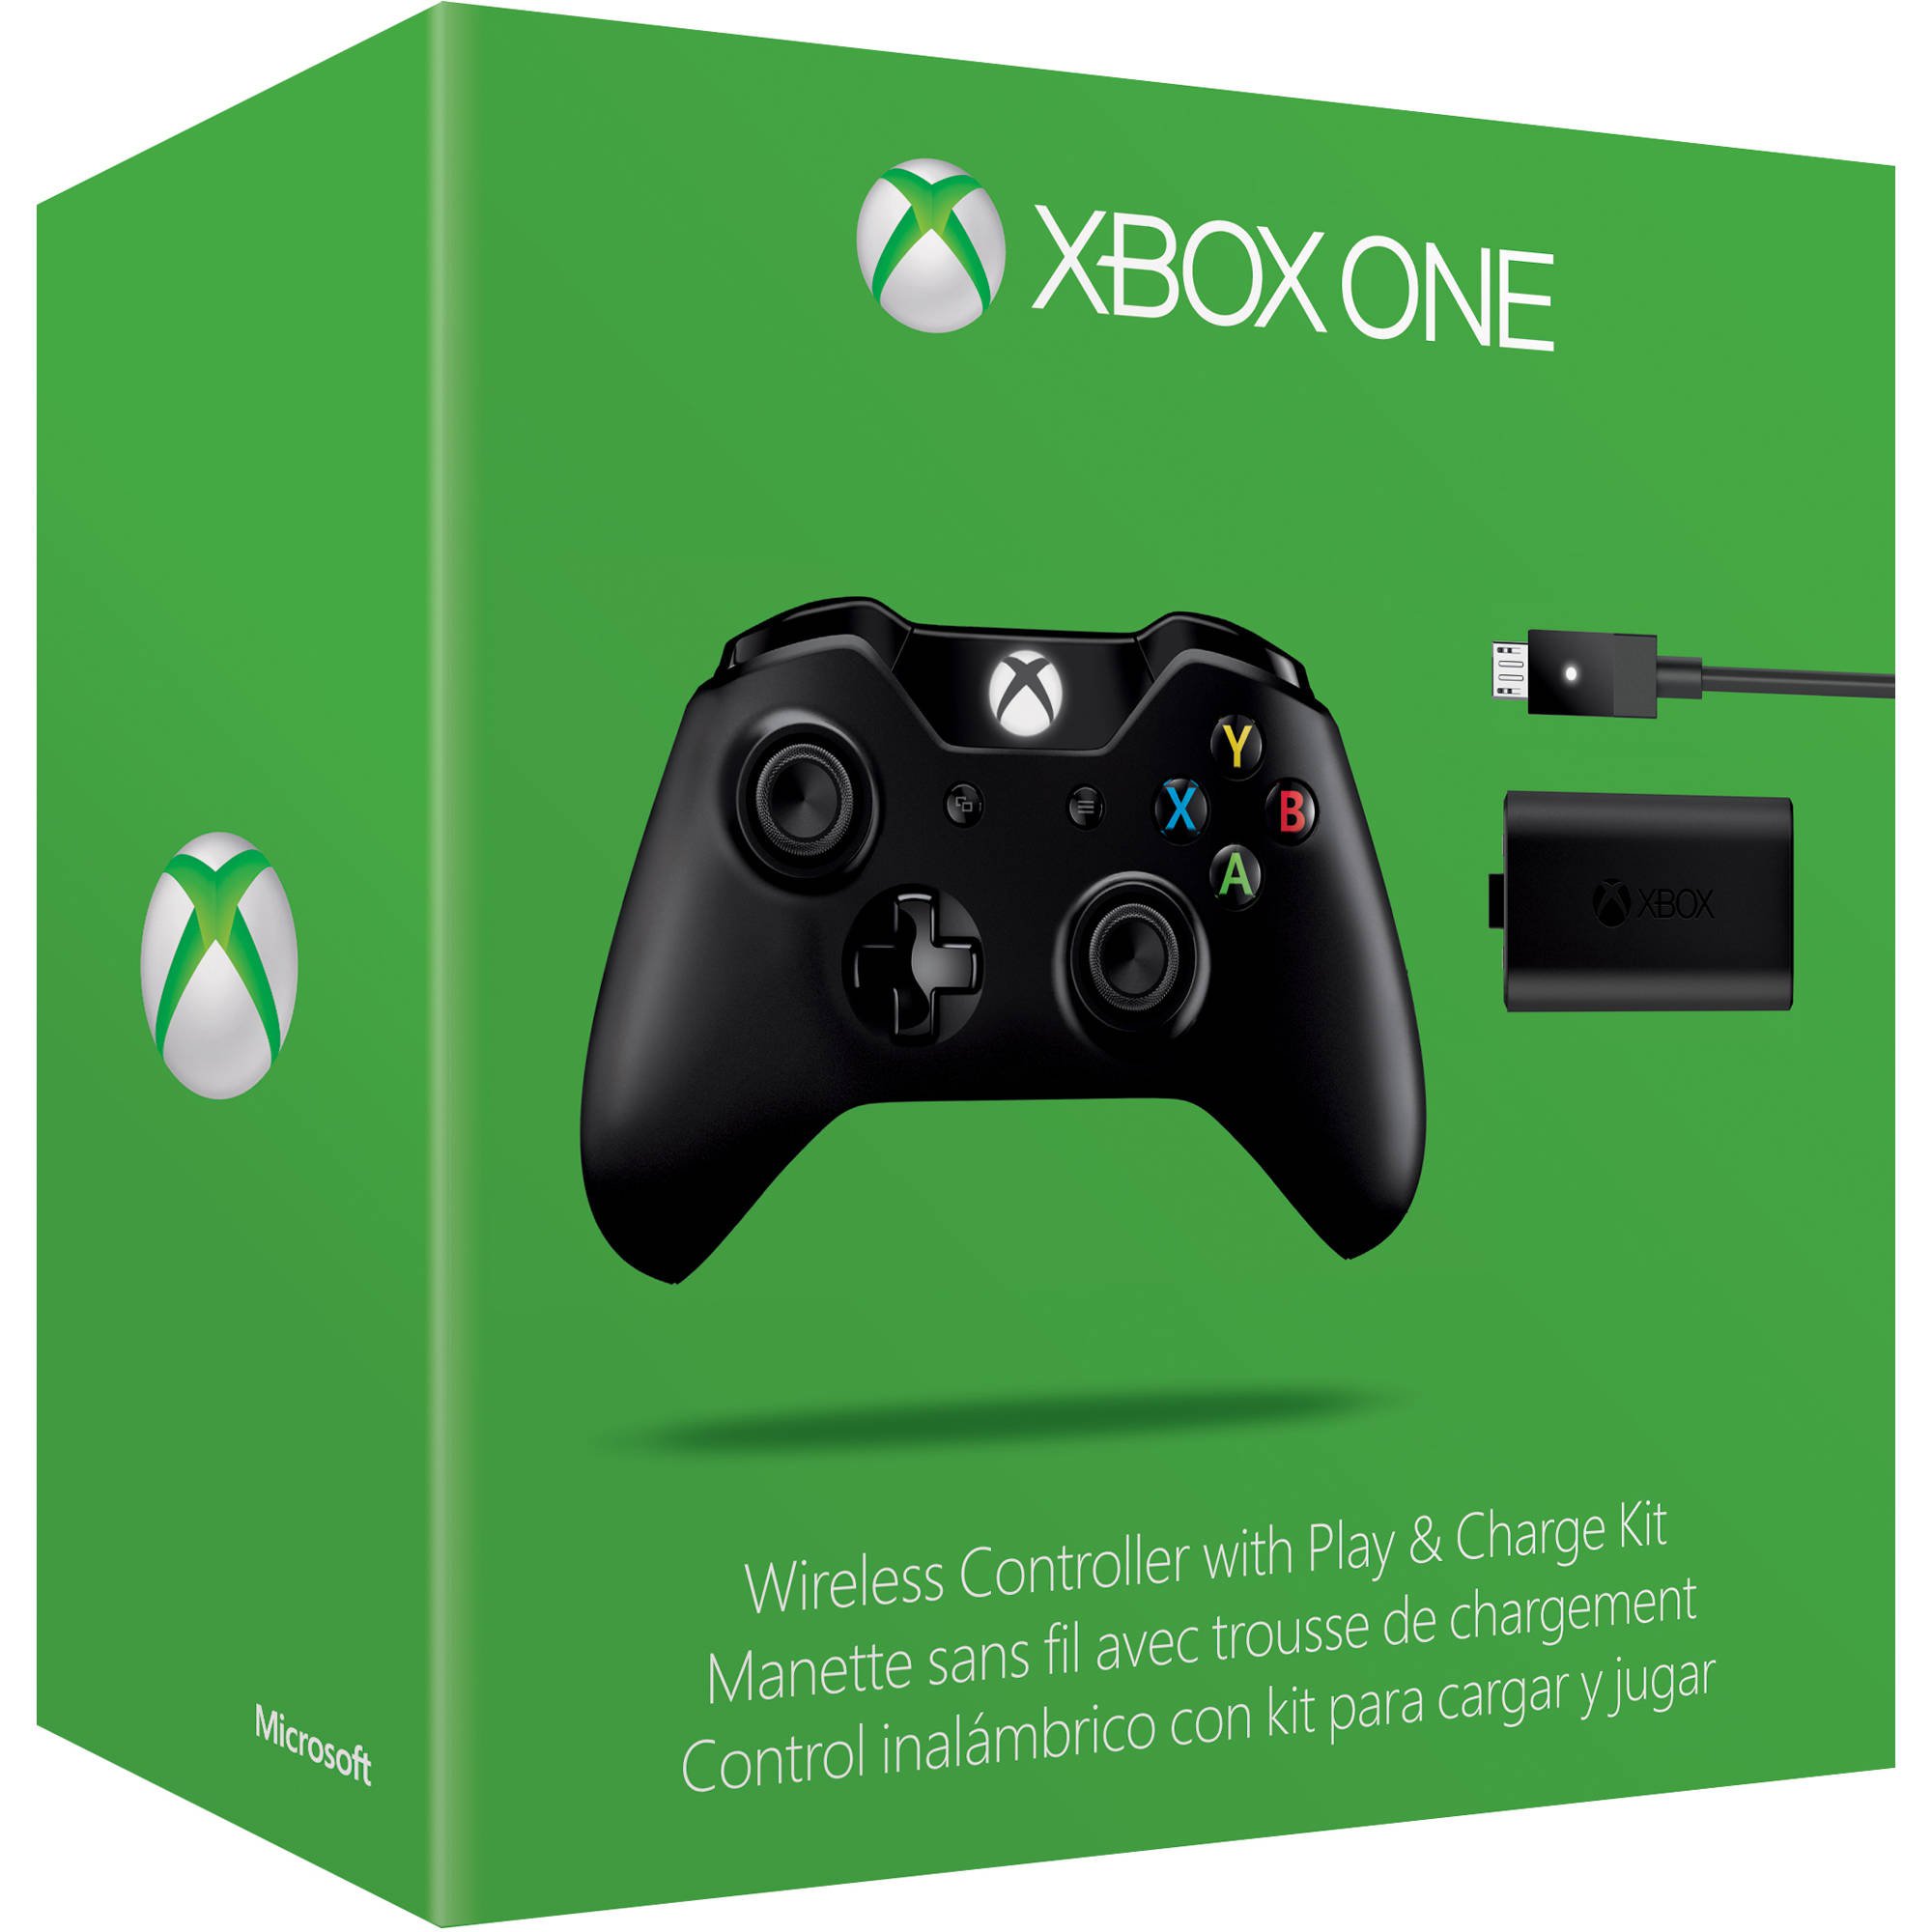 Control inalámbrico Micfrosoft Xbox One + Carga y Juega - EX7-00006